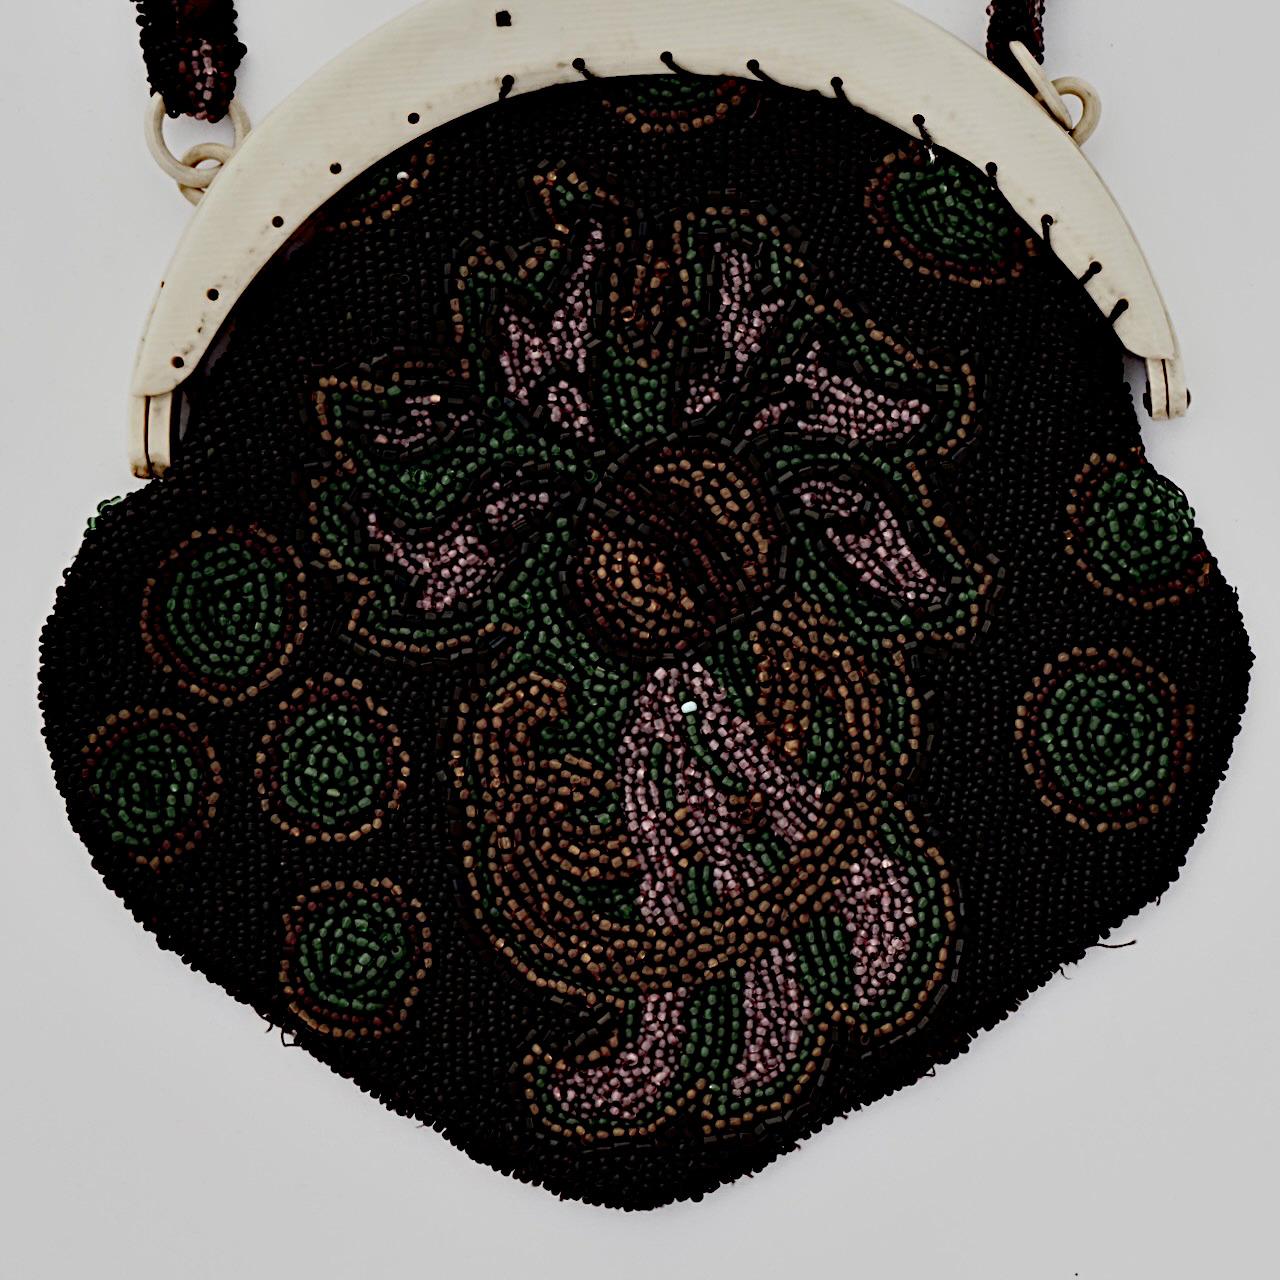 Hübsche Art-Déco-Tasche mit schwarzen, gelben, roten, grünen und malvenfarbenen Perlen und einem cremefarbenen Zelluloidrahmen. Maximale Breite 16 cm / 6,29 Zoll und Höhe 17 cm / 6,69 Zoll, mit einem Griff Drop von 13 cm / 5,1 Zoll. Die Tasche ist